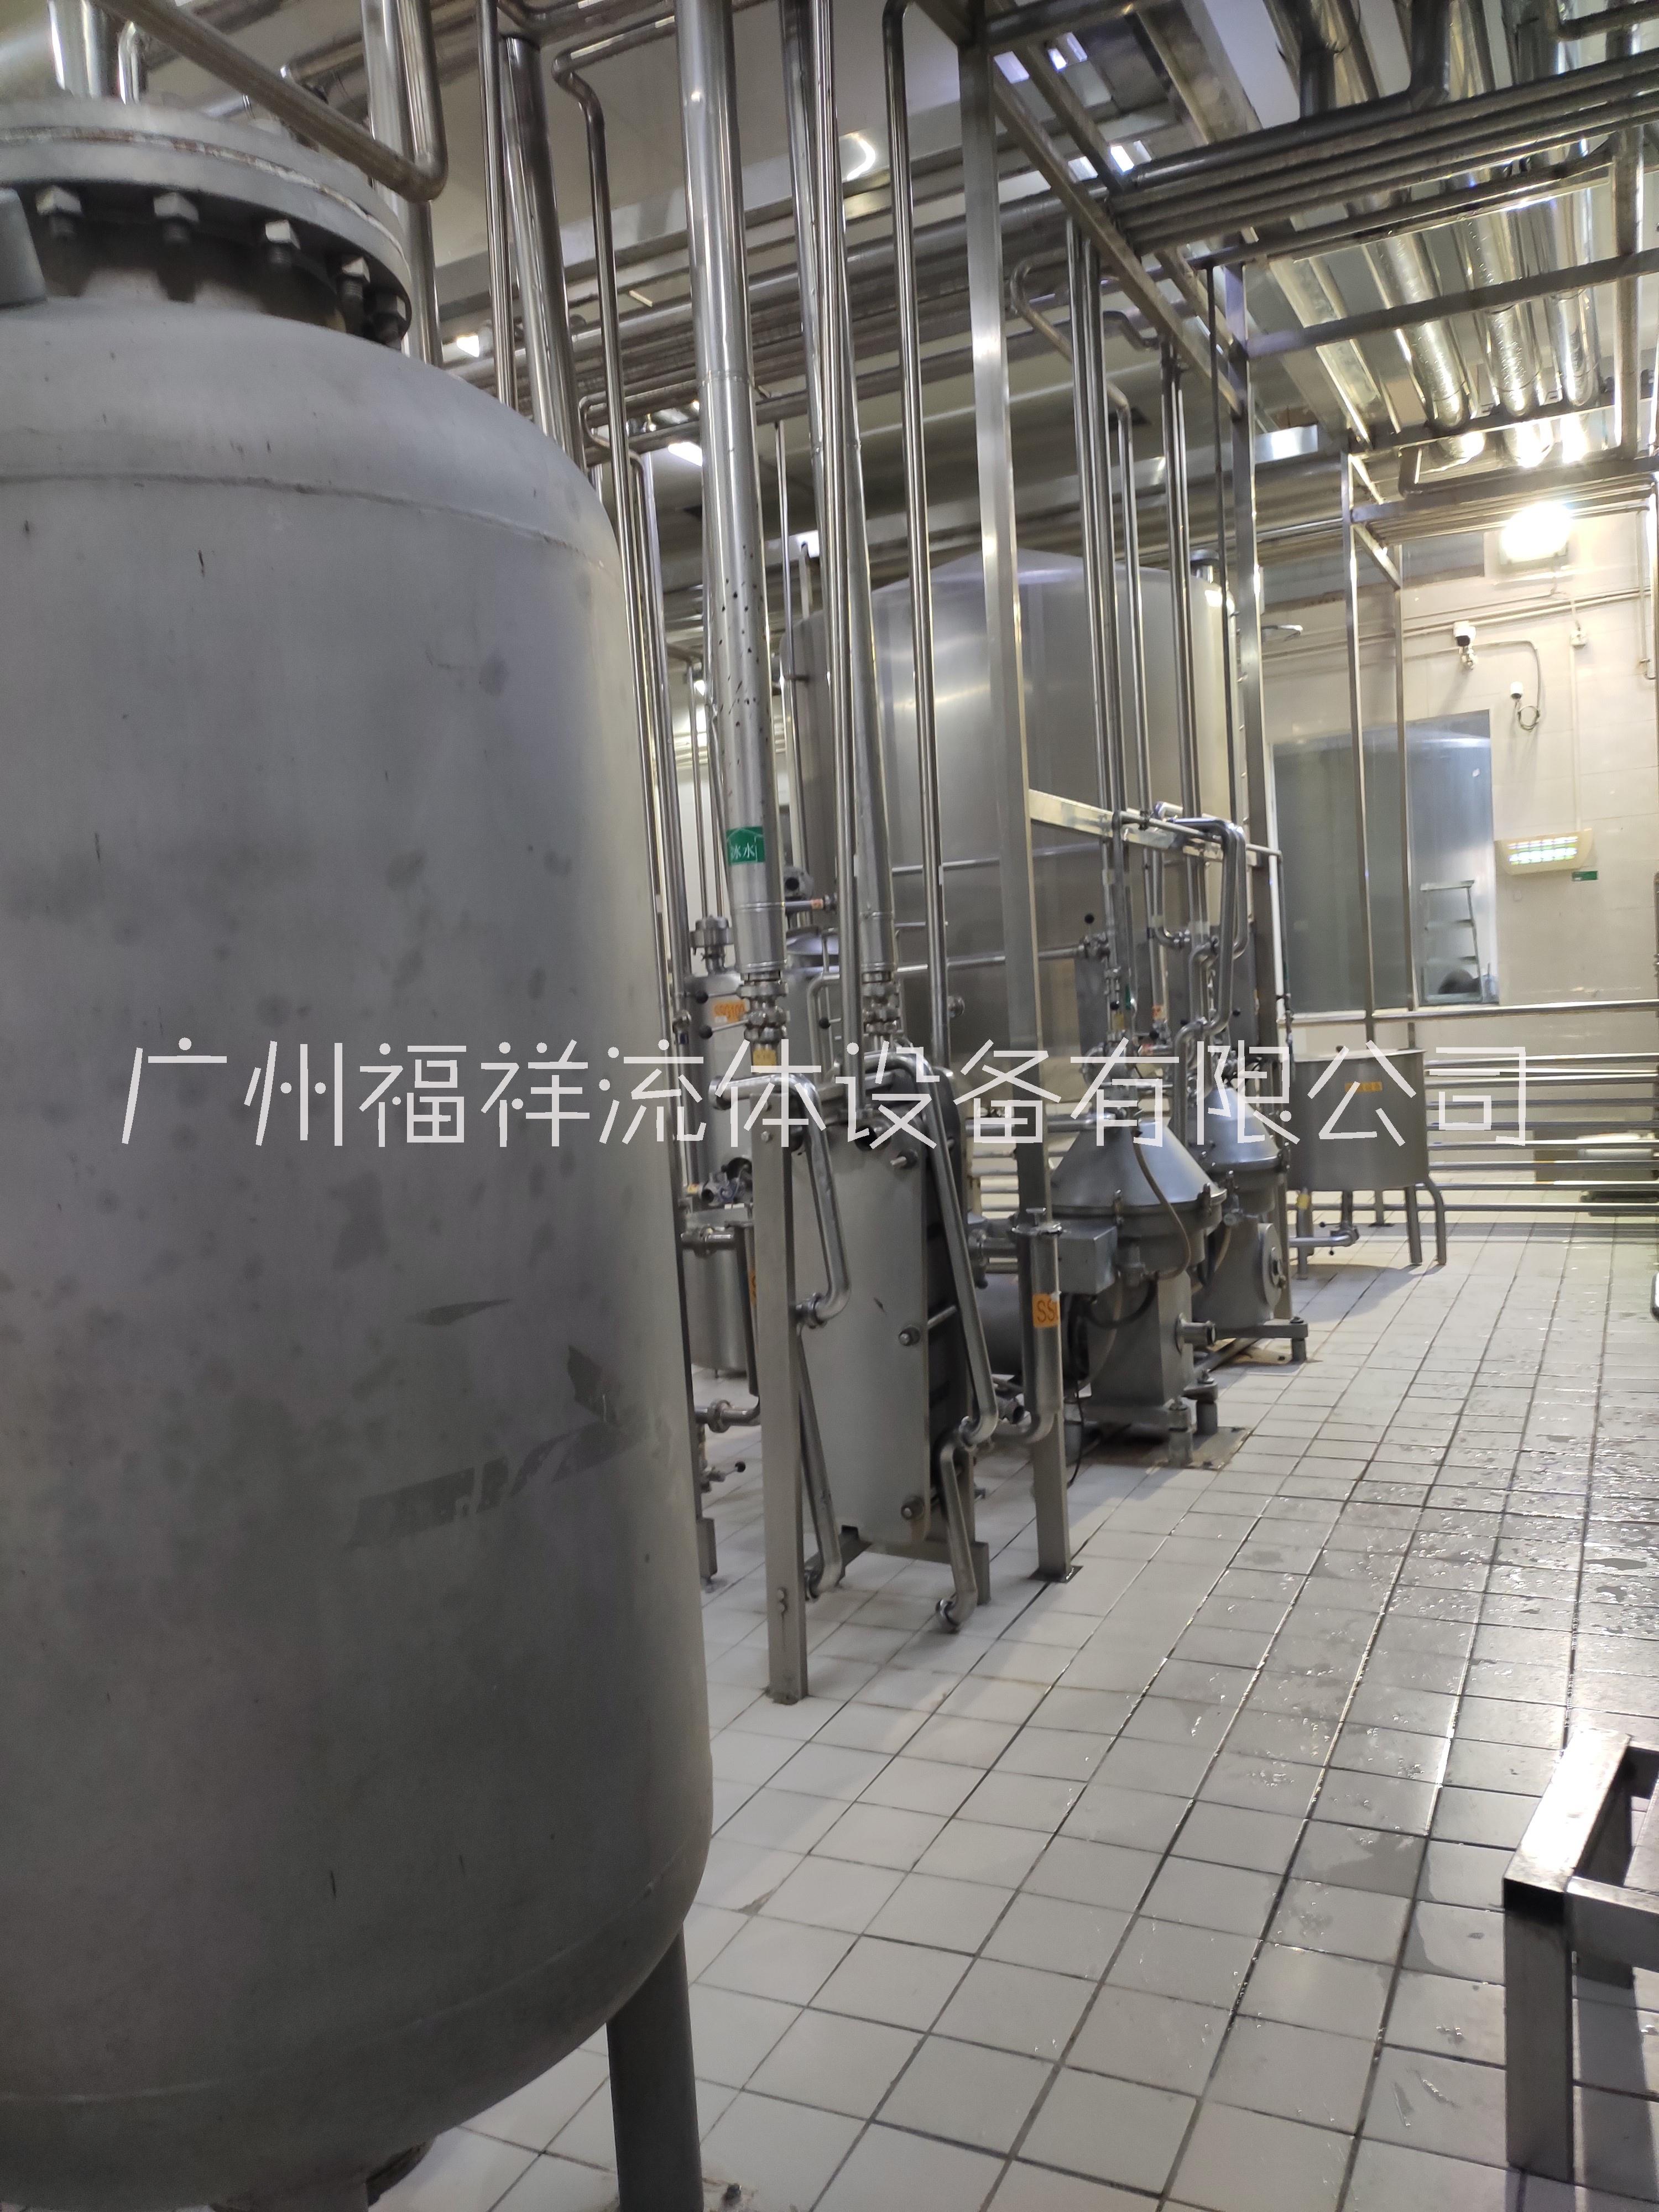 广州知识城管道安装广州知识城纯化水机保养广州知识城设备安装